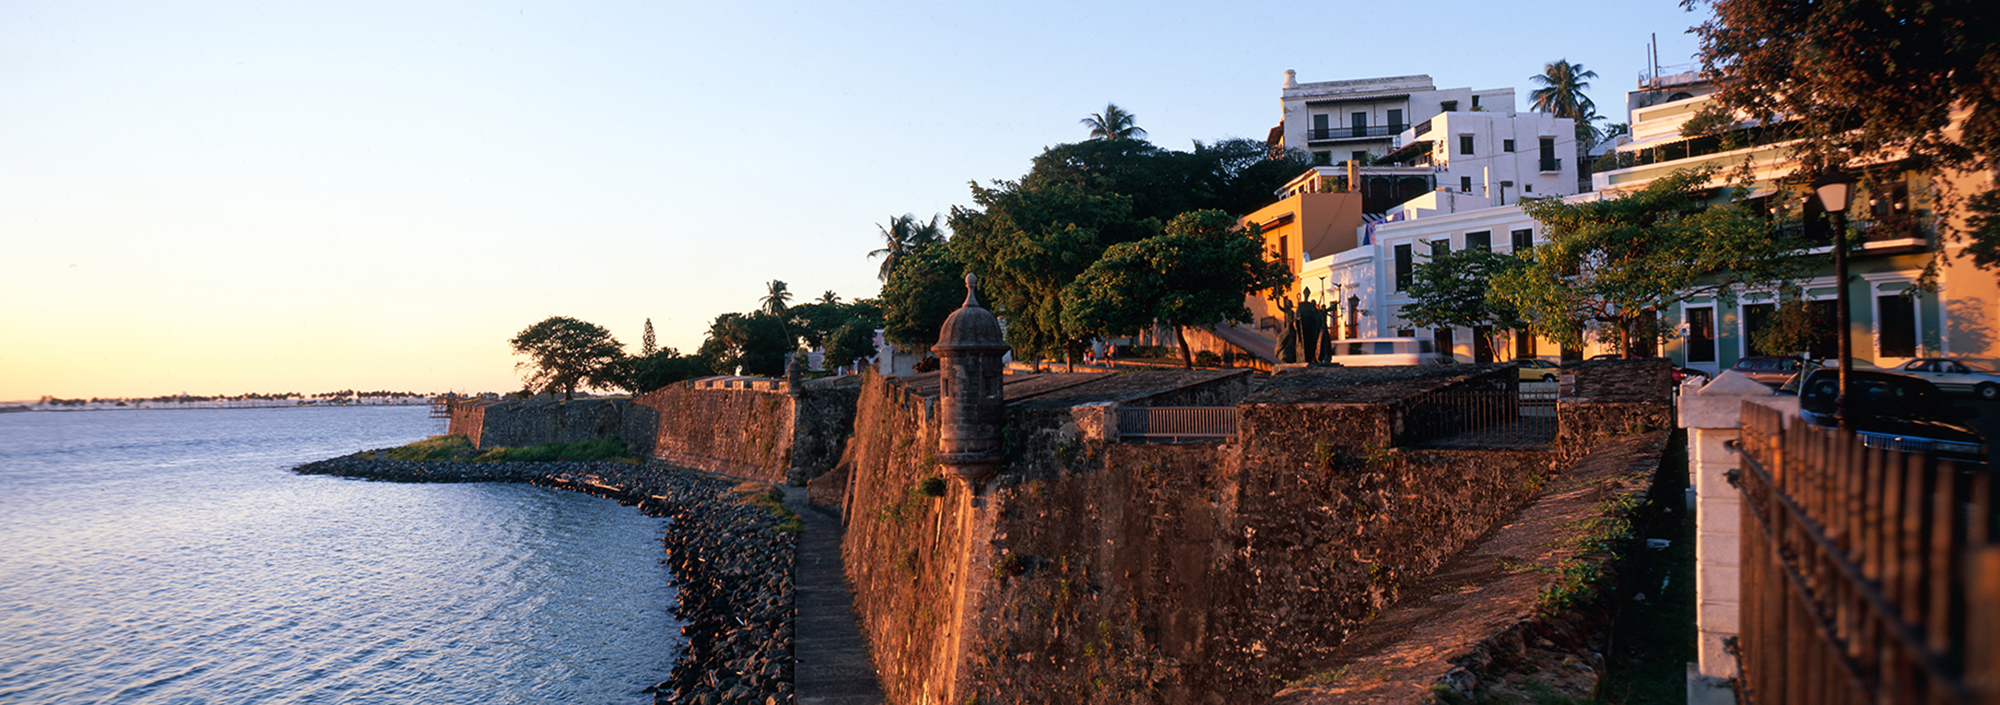 Festung in San Juan auf Puerto Rico